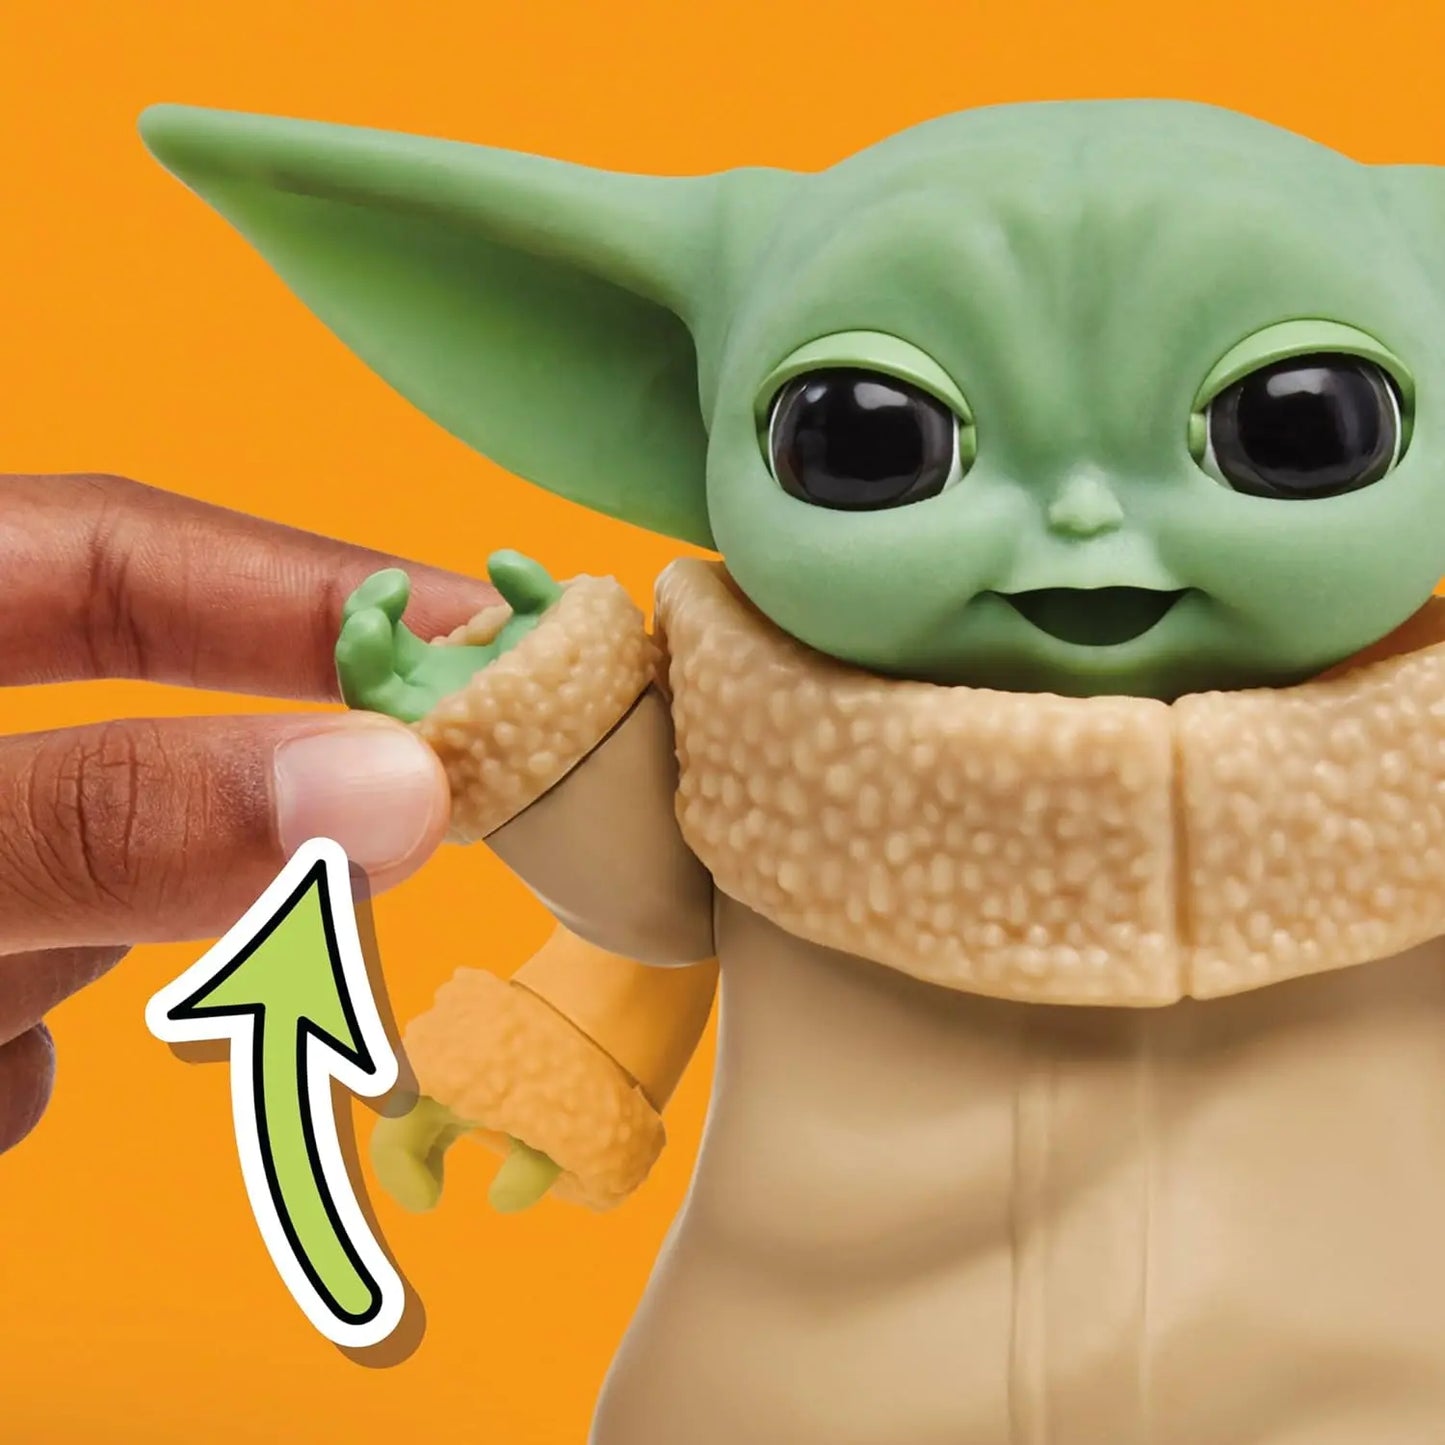 poupée Star Wars Mixin' Moods Grogu, 20+ Expressions Personnalisables, Figurine Grogu de 12,5 cm, Jouets Star Wars pour Enfants Star wars